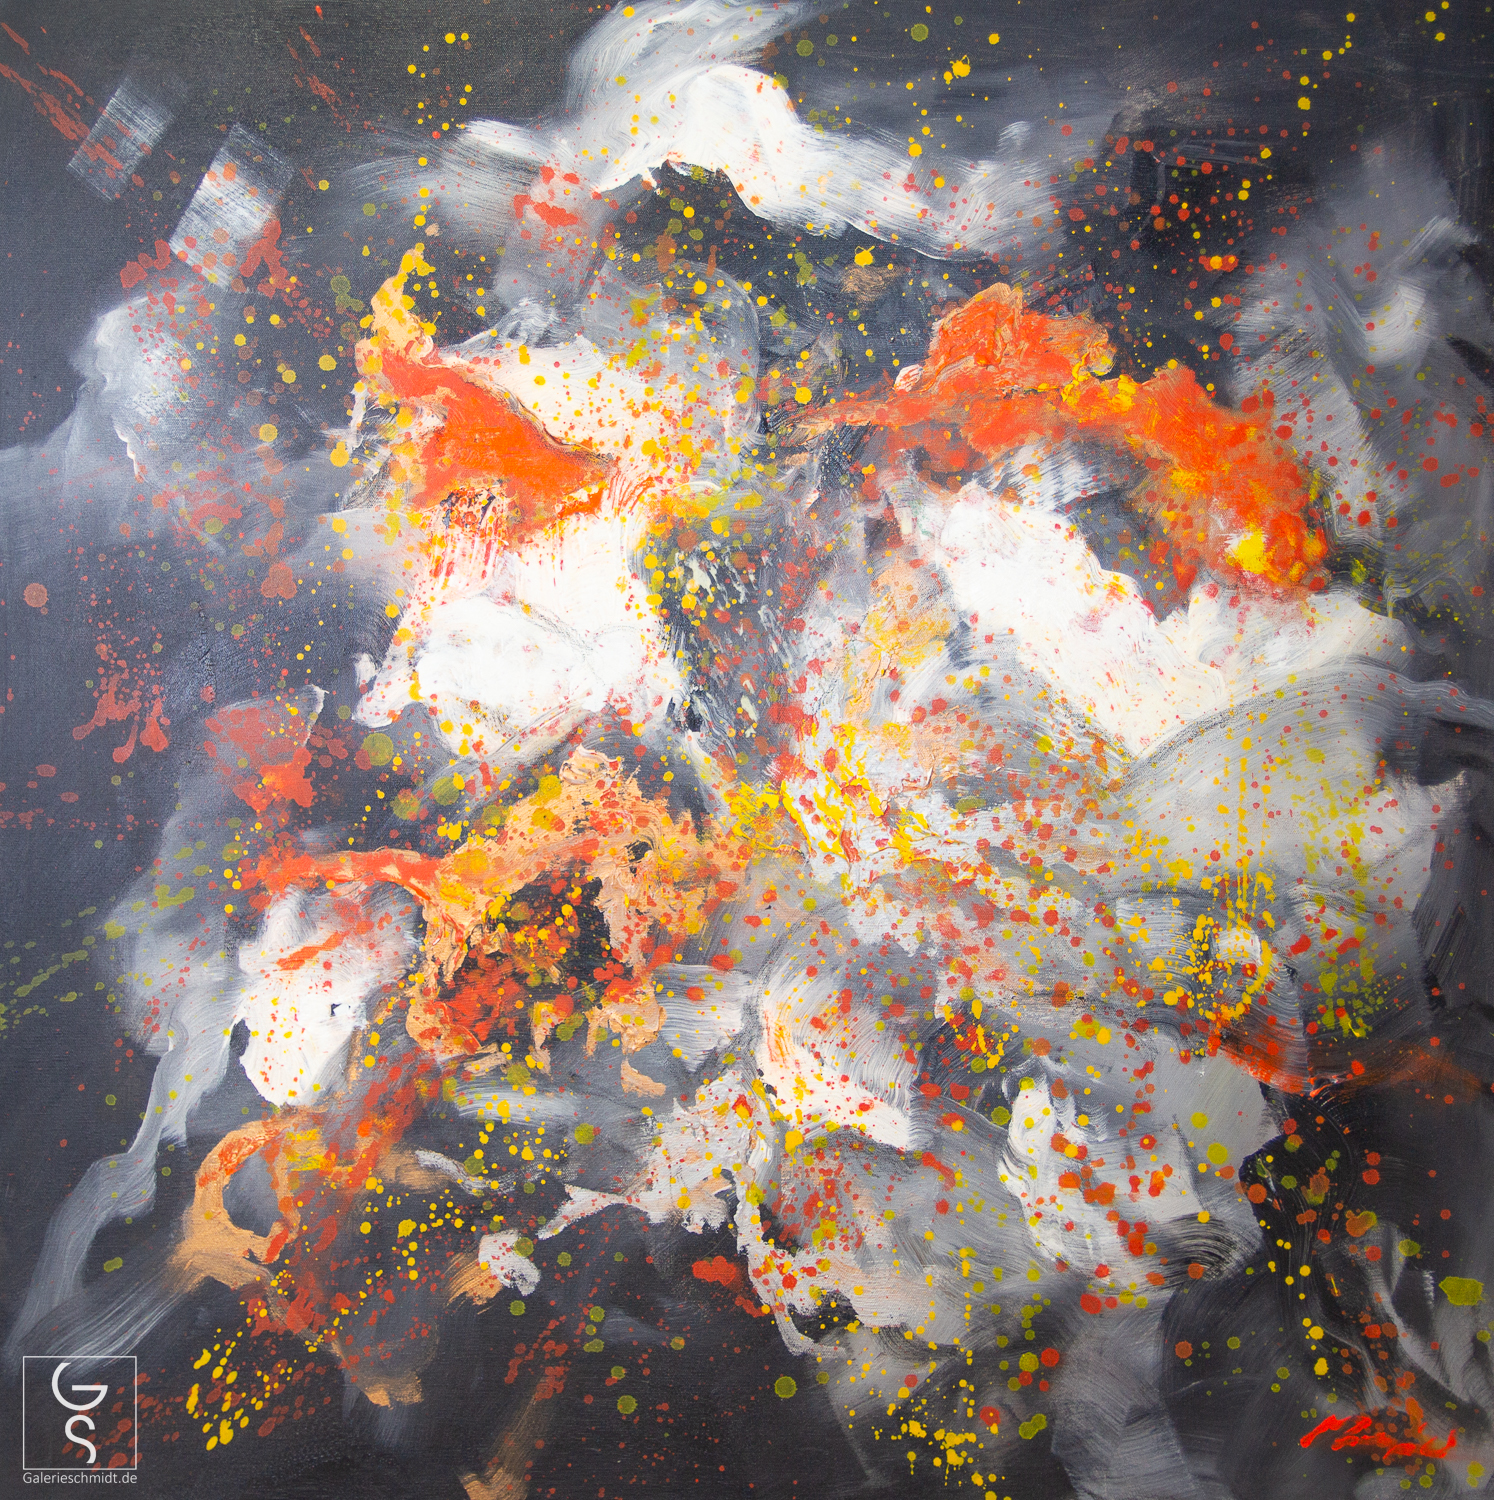 Eruption des Lichts, abstraktes Gemälde von Madjid in Schwarz, Weiß, Gelb und Orange